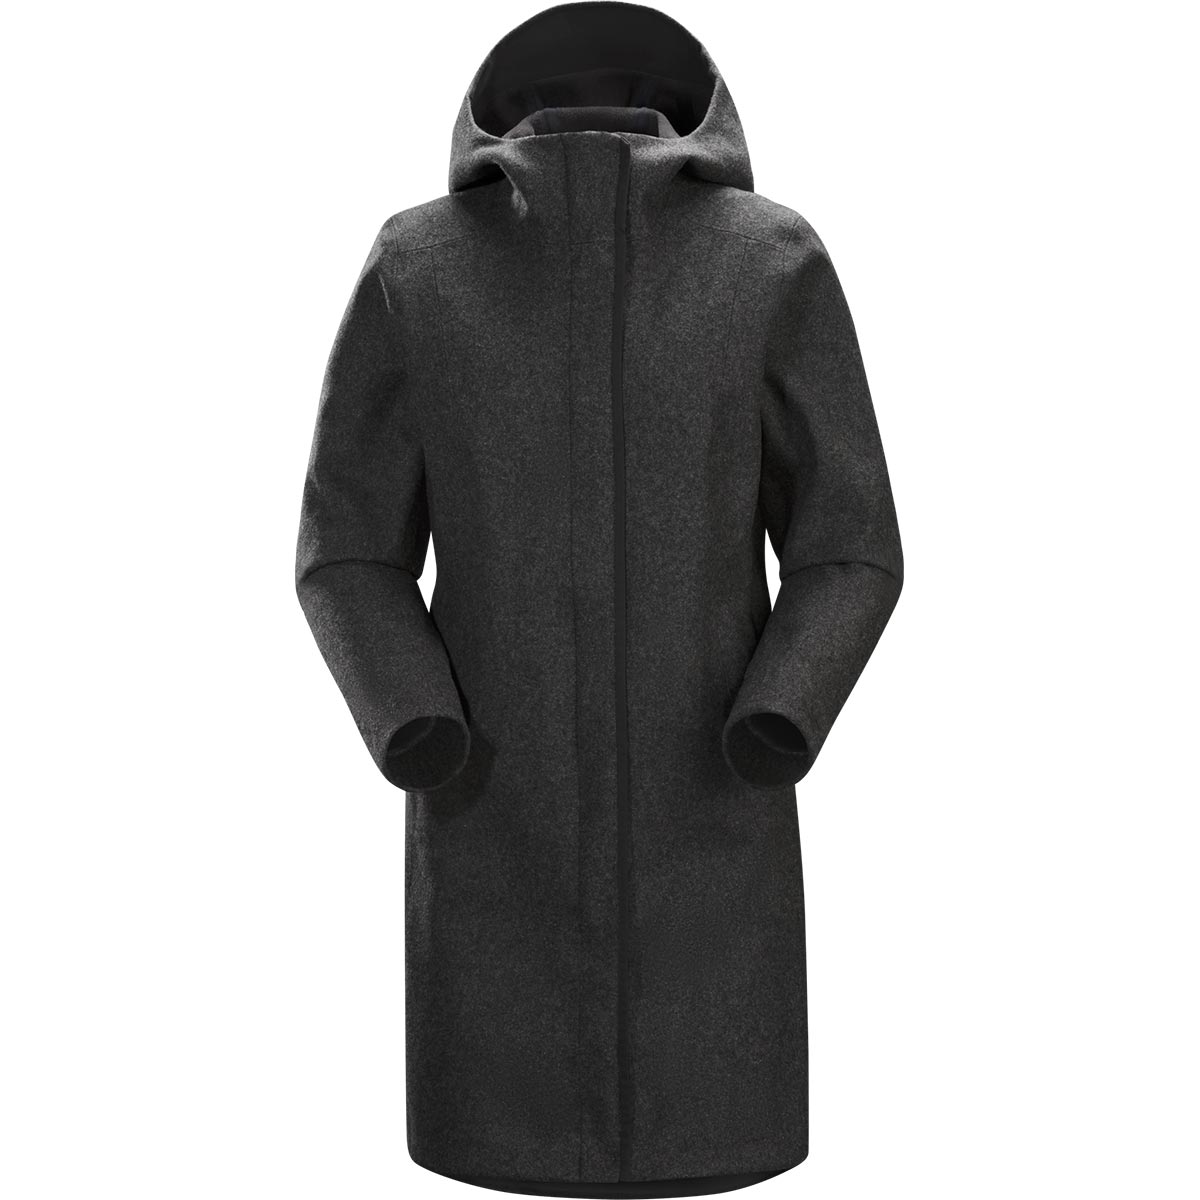 Embra Coat, women's, discontinued Fall 2018 model